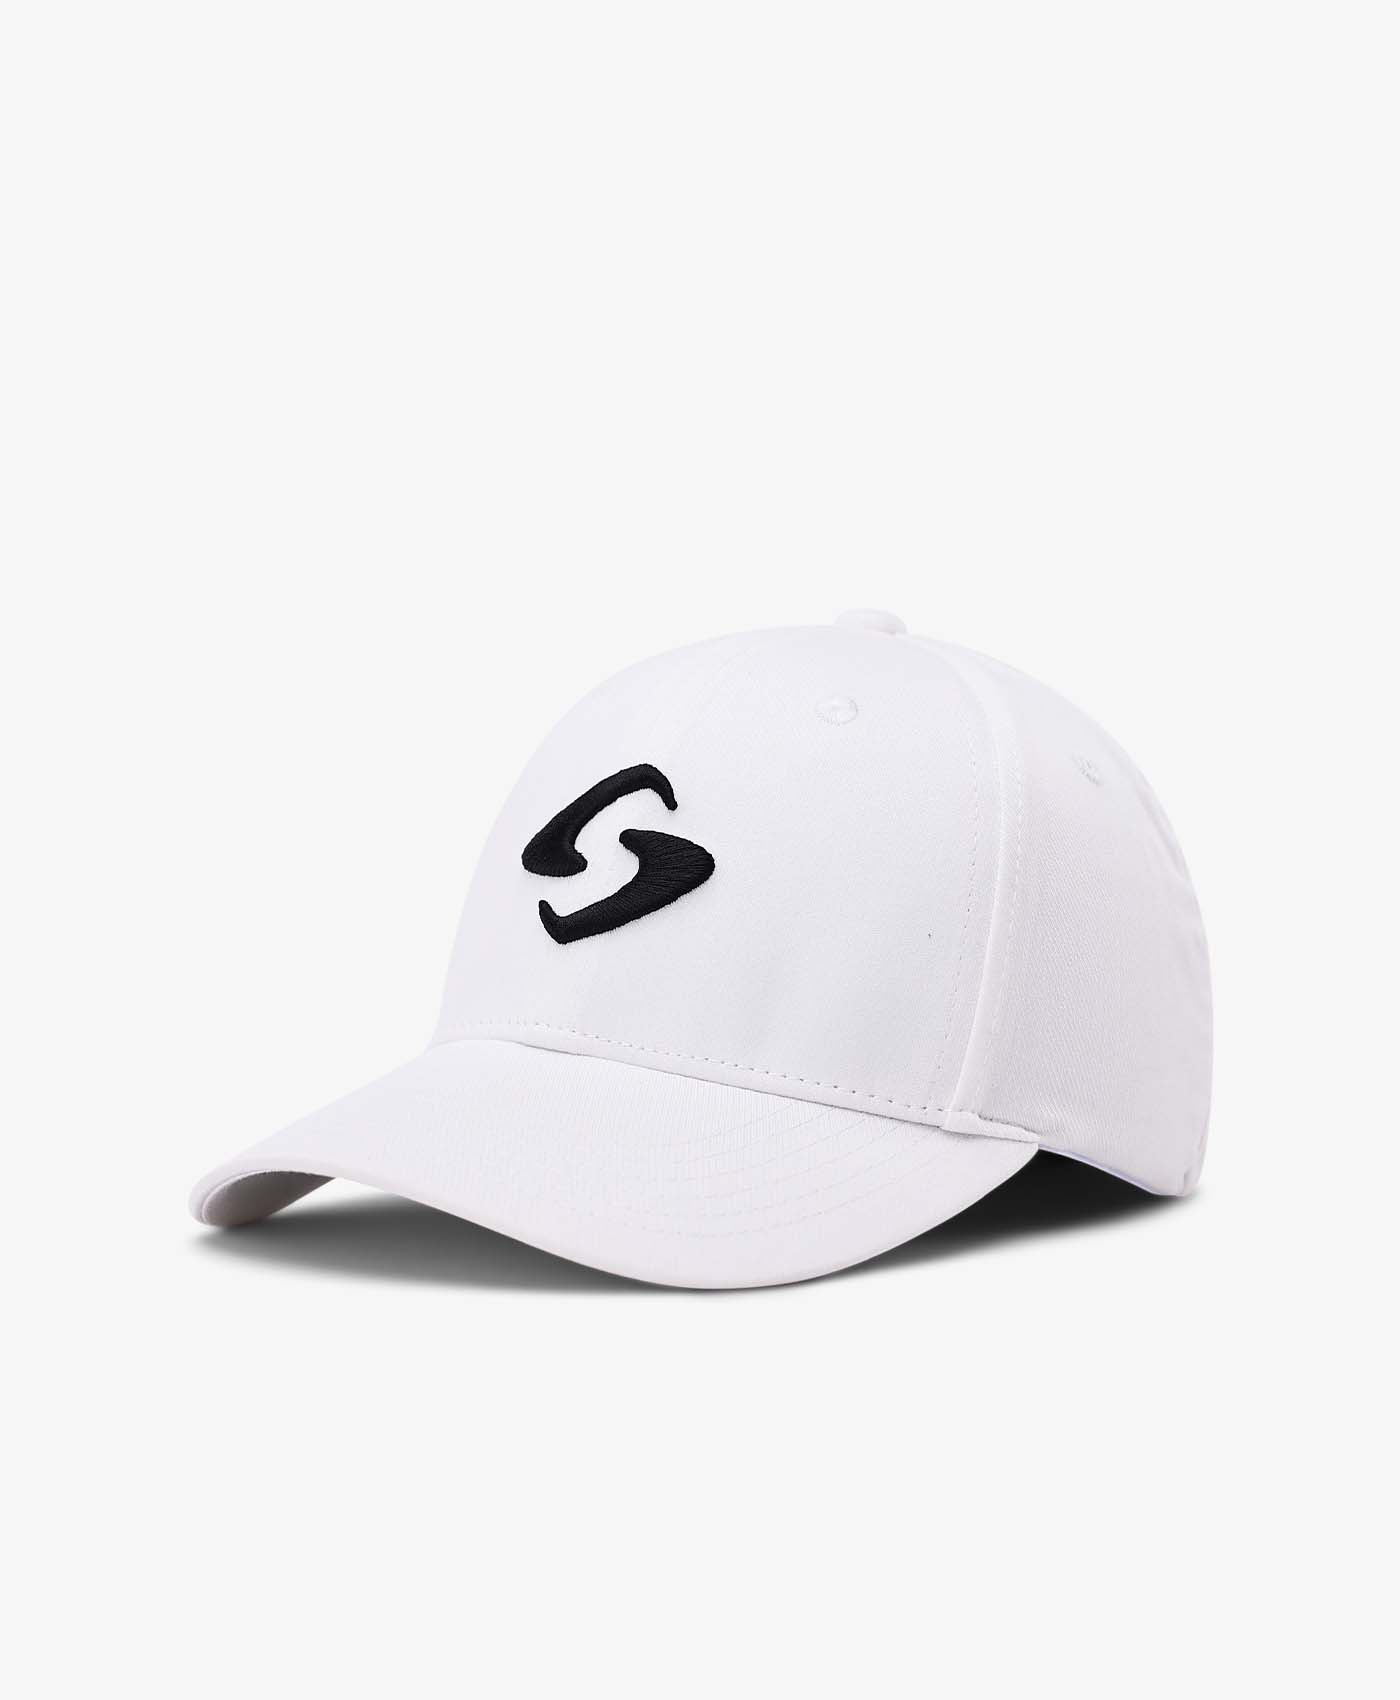 GB Sport Hat